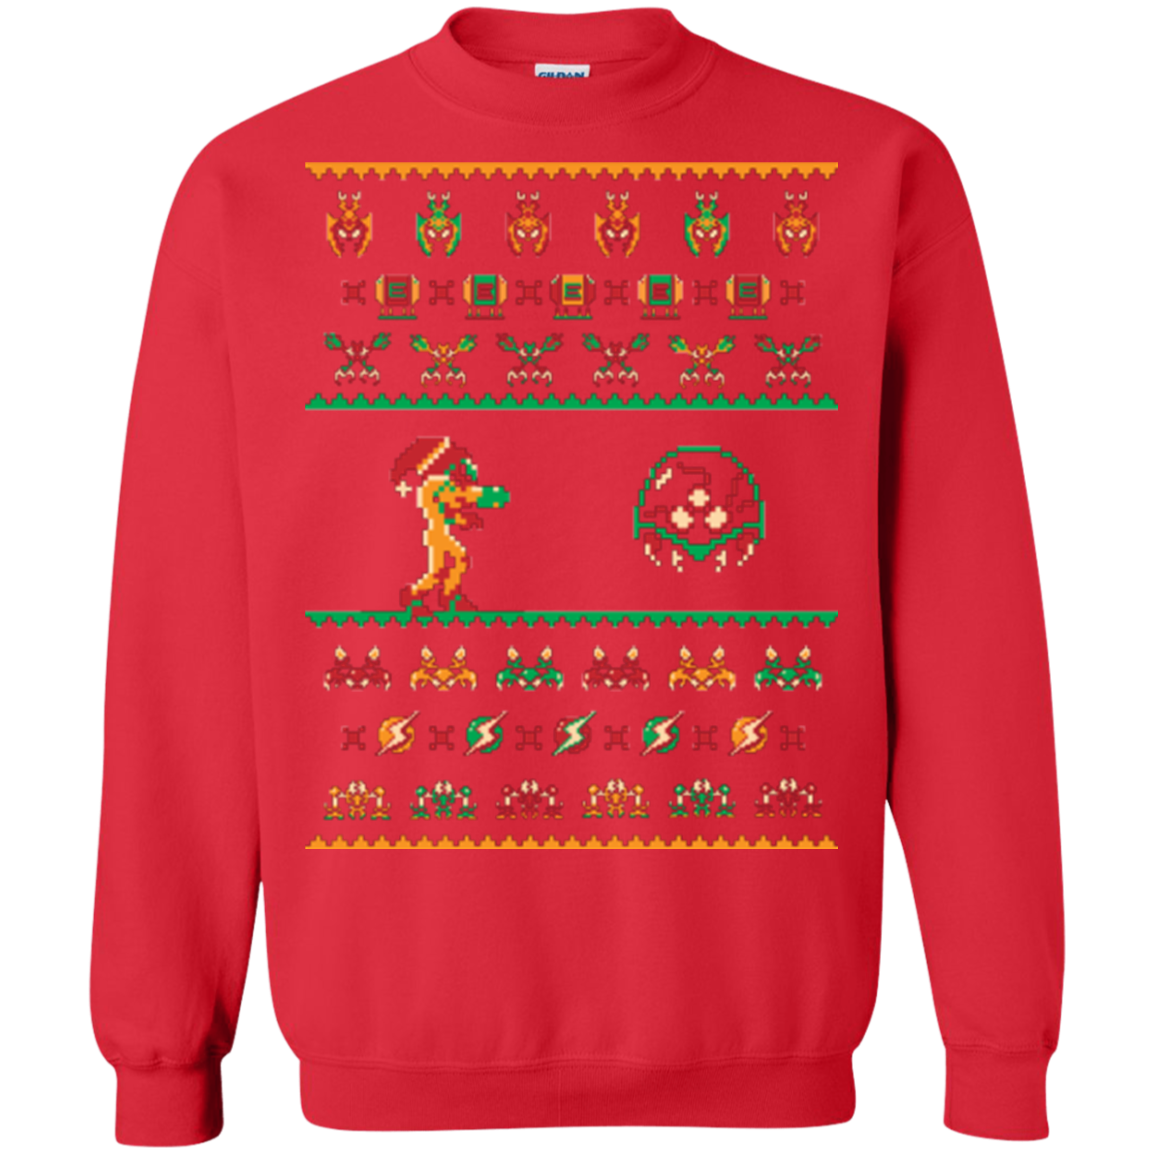 We Wish You A Metroid Christmas Crewneck Sweatshirt